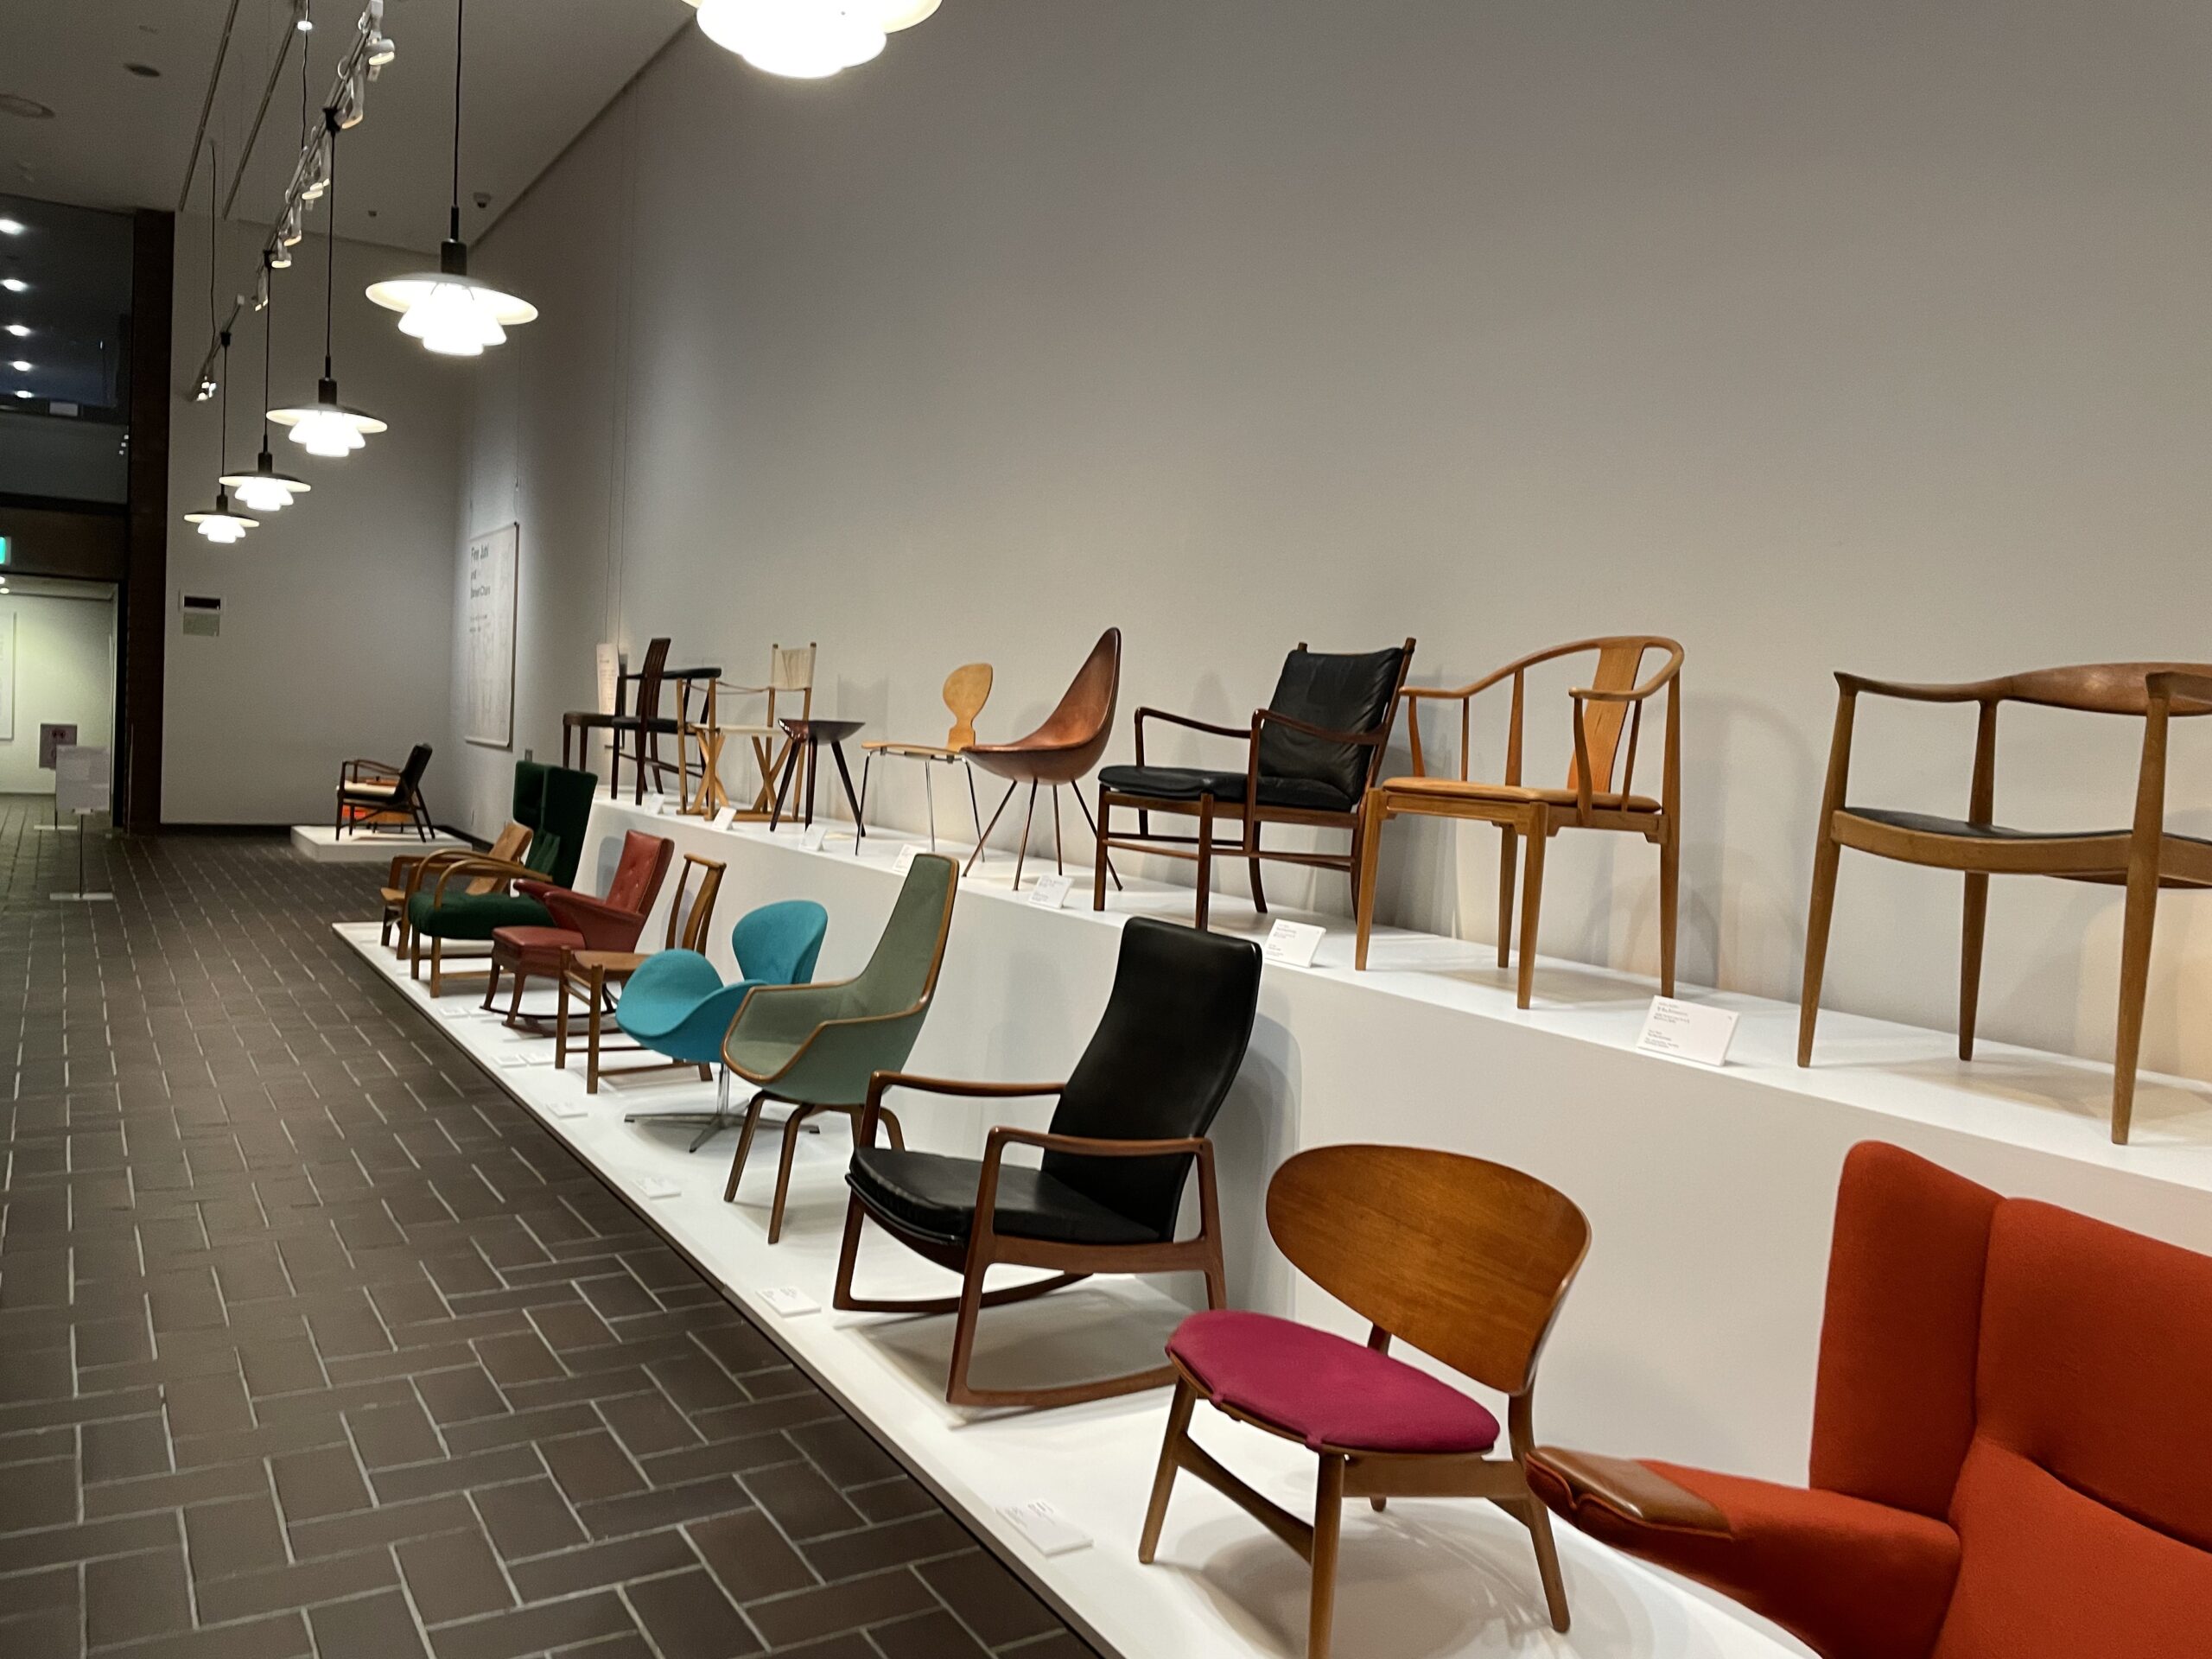 東京都美術館「フィン・ユールとデンマークの椅子」展覧会いよいよ 